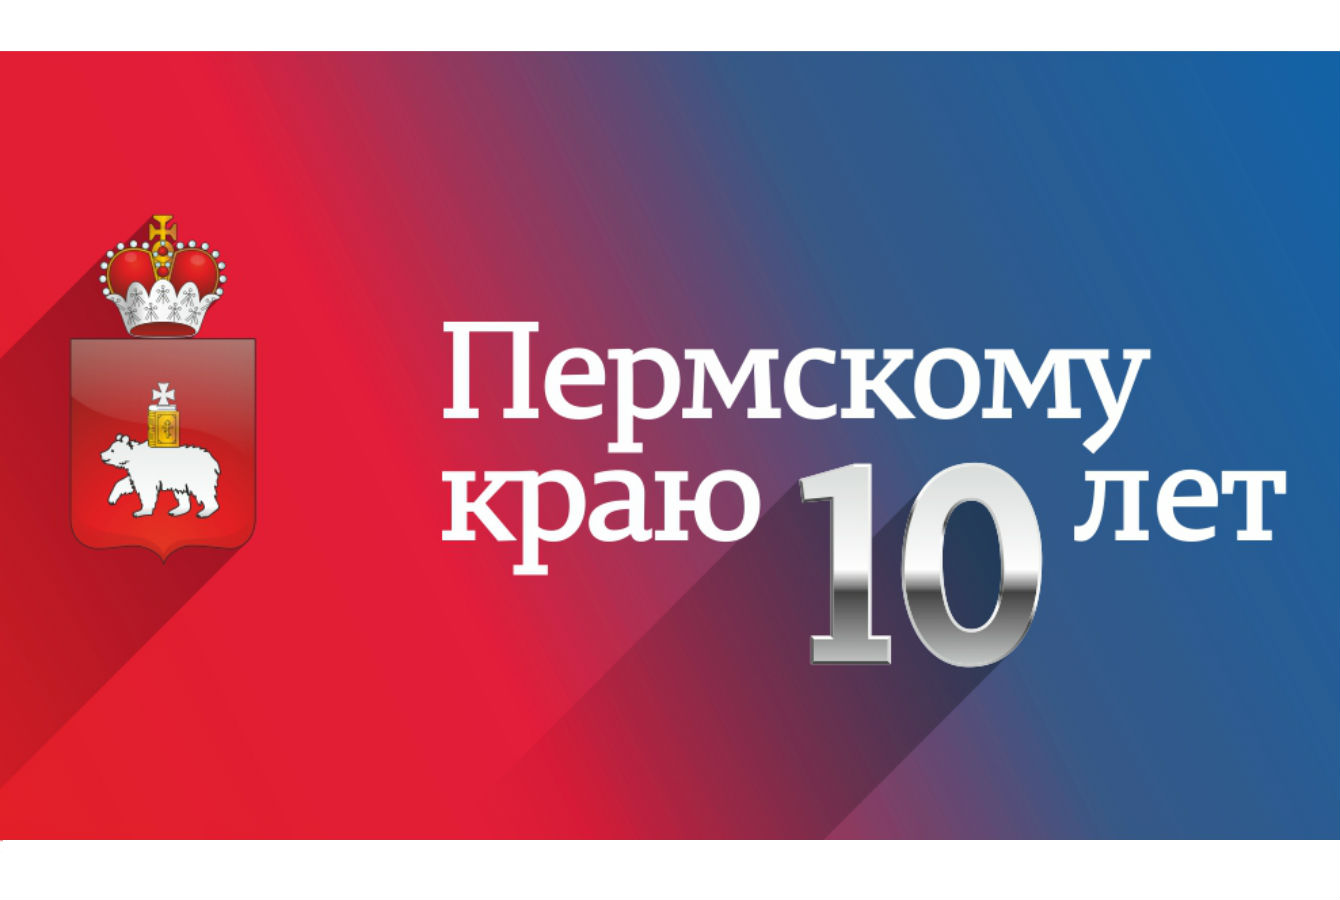 Завтра в Перми состоится торжественное мероприятие, посвященное 10-летию Пермского края